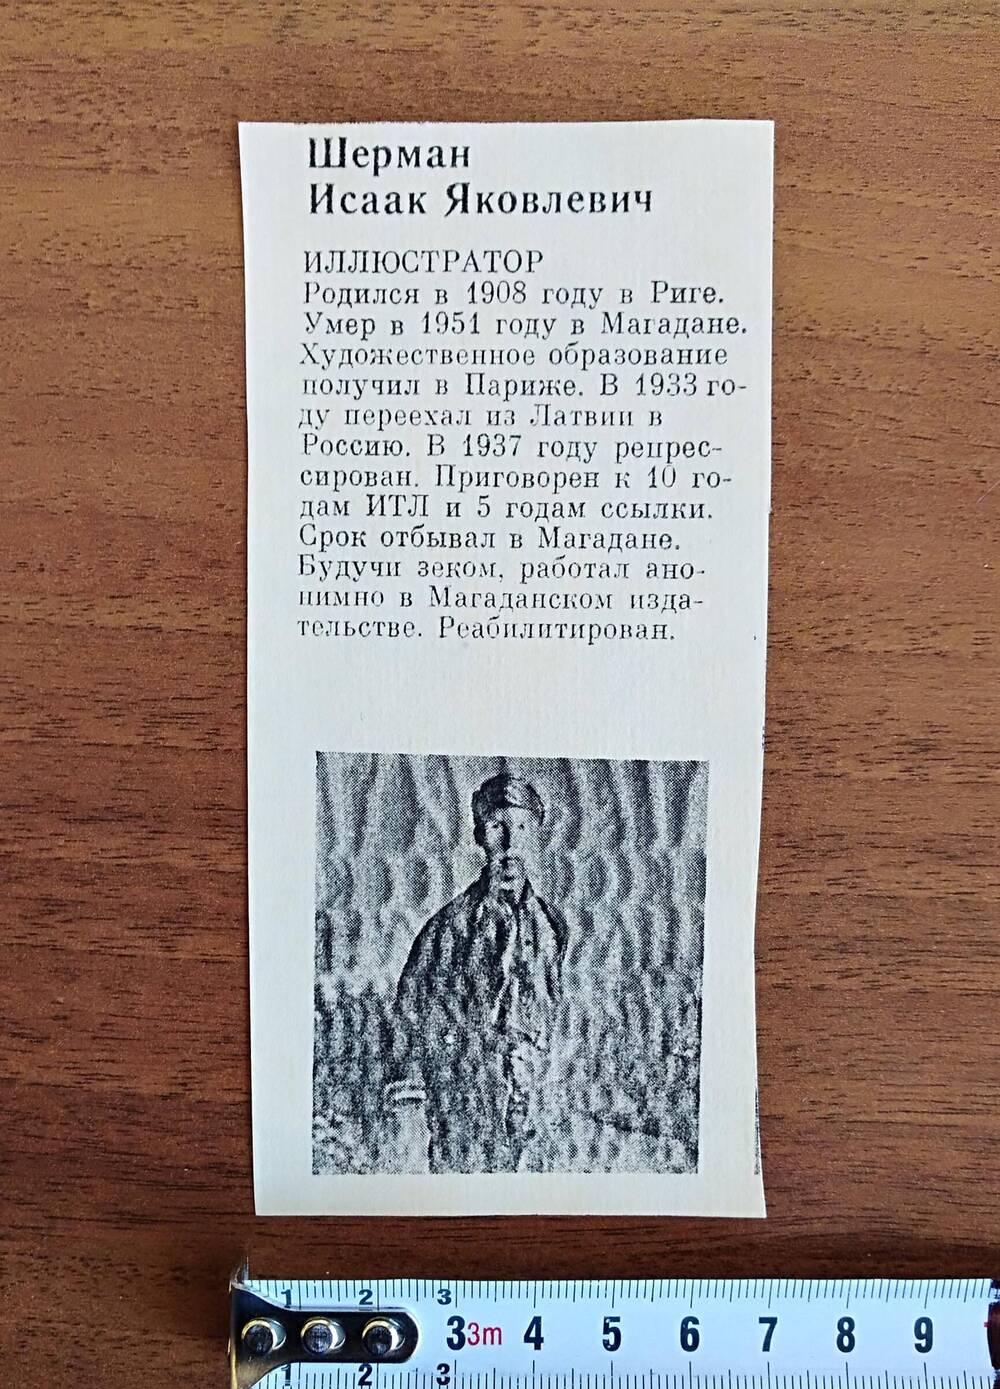 Вырезка с краткой информацией об иллюстраторе Шермане Исааке Яковлевиче, с напечатанной фотографией черно-белого цвета